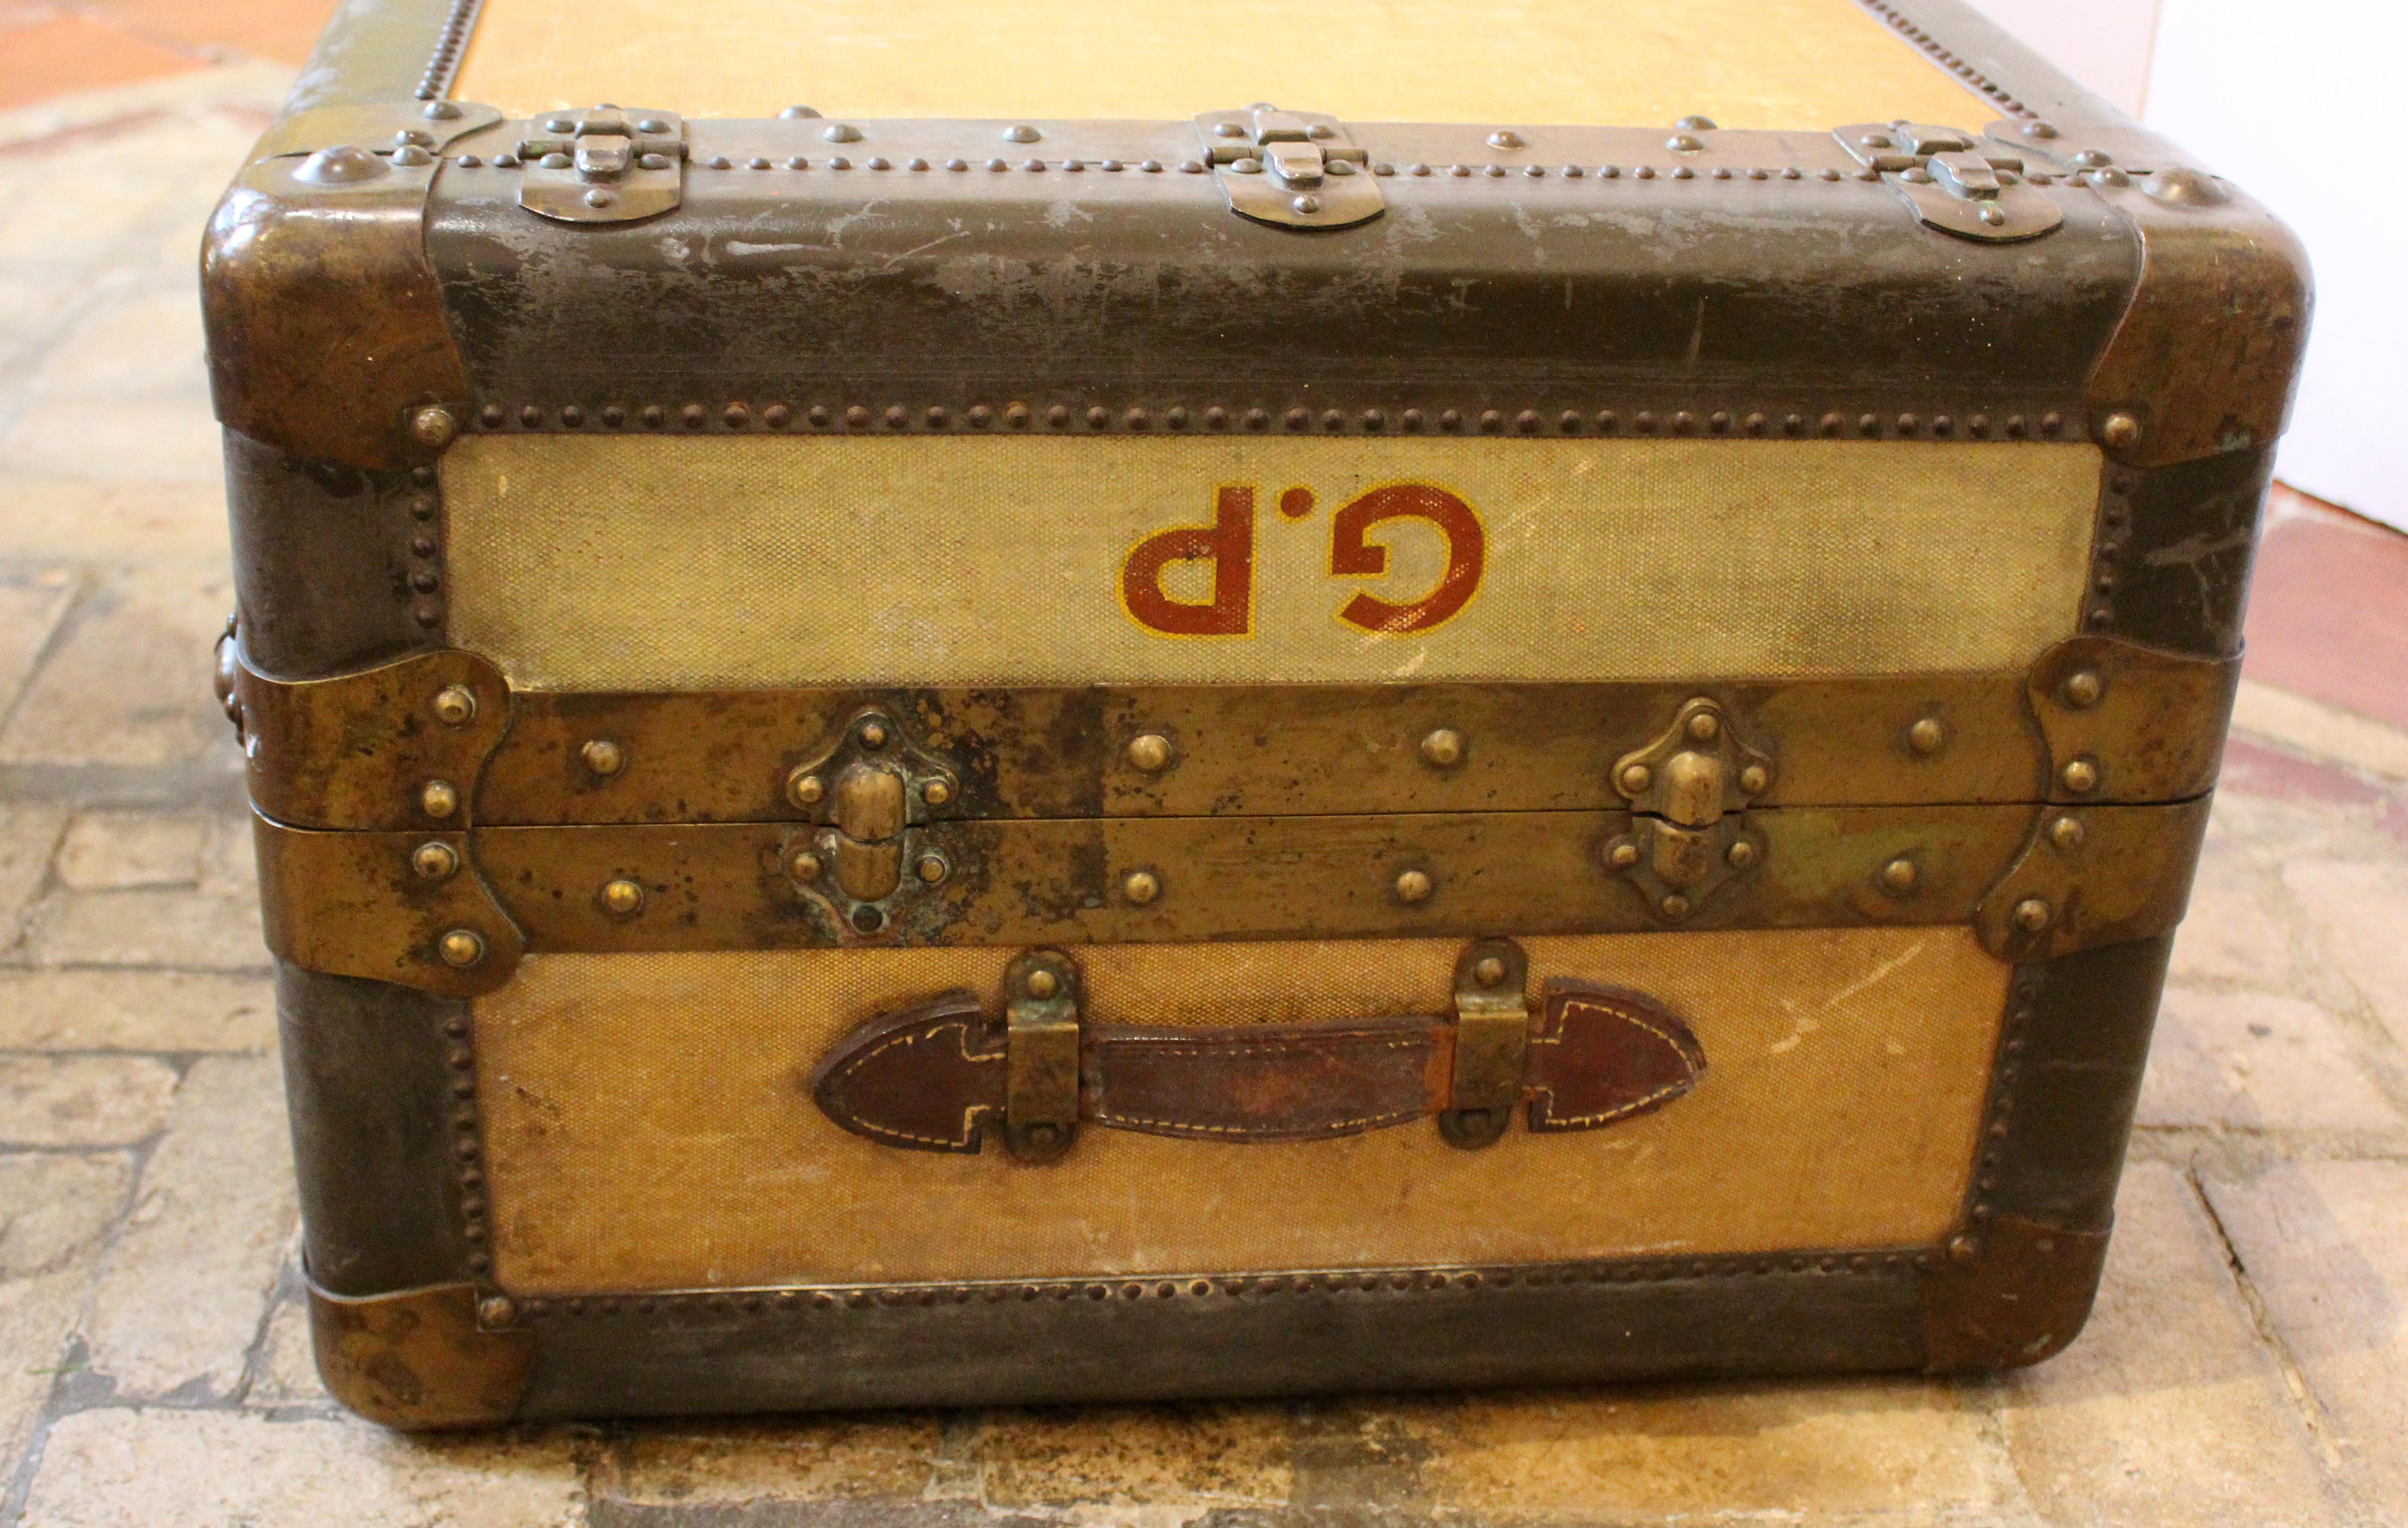 Ein Schrankkoffer aus dem 19. Jahrhundert. Gute Qualität, Französisch. Gestreifter Stoff, Holz, Metall und Messing gebunden. Auf der einen Seite zum Aufhängen geeignet, auf der anderen Seite mit Schubladen und ausklappbarem Stauraum. Es ist zum